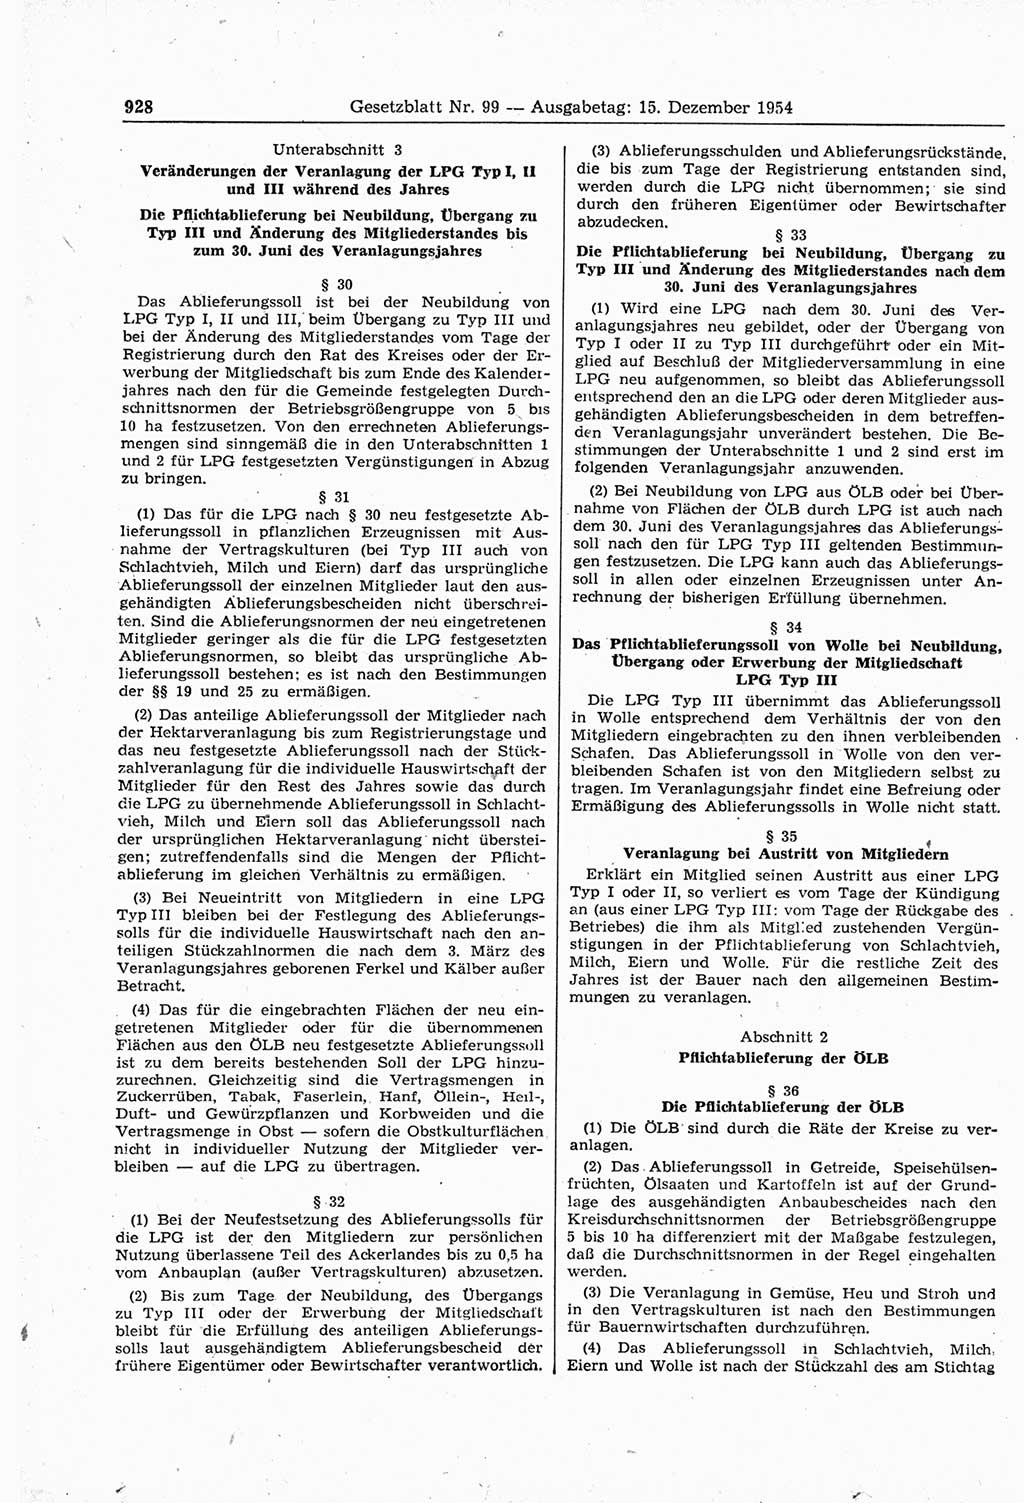 Gesetzblatt (GBl.) der Deutschen Demokratischen Republik (DDR) 1954, Seite 928 (GBl. DDR 1954, S. 928)